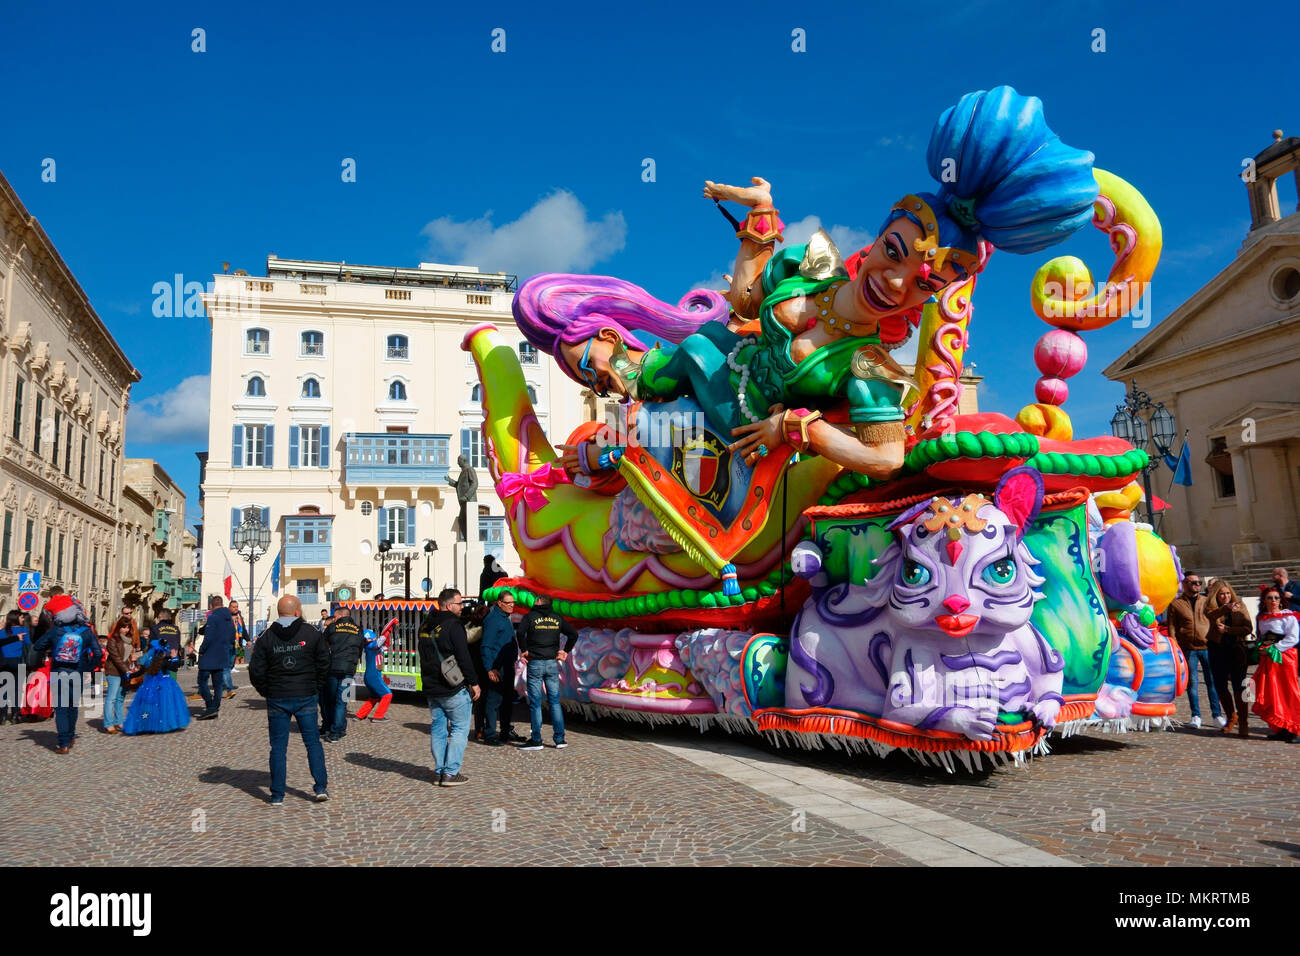 Carnival Carnival, de flottement dans La Valette, février 2018, Malte, Europe Banque D'Images